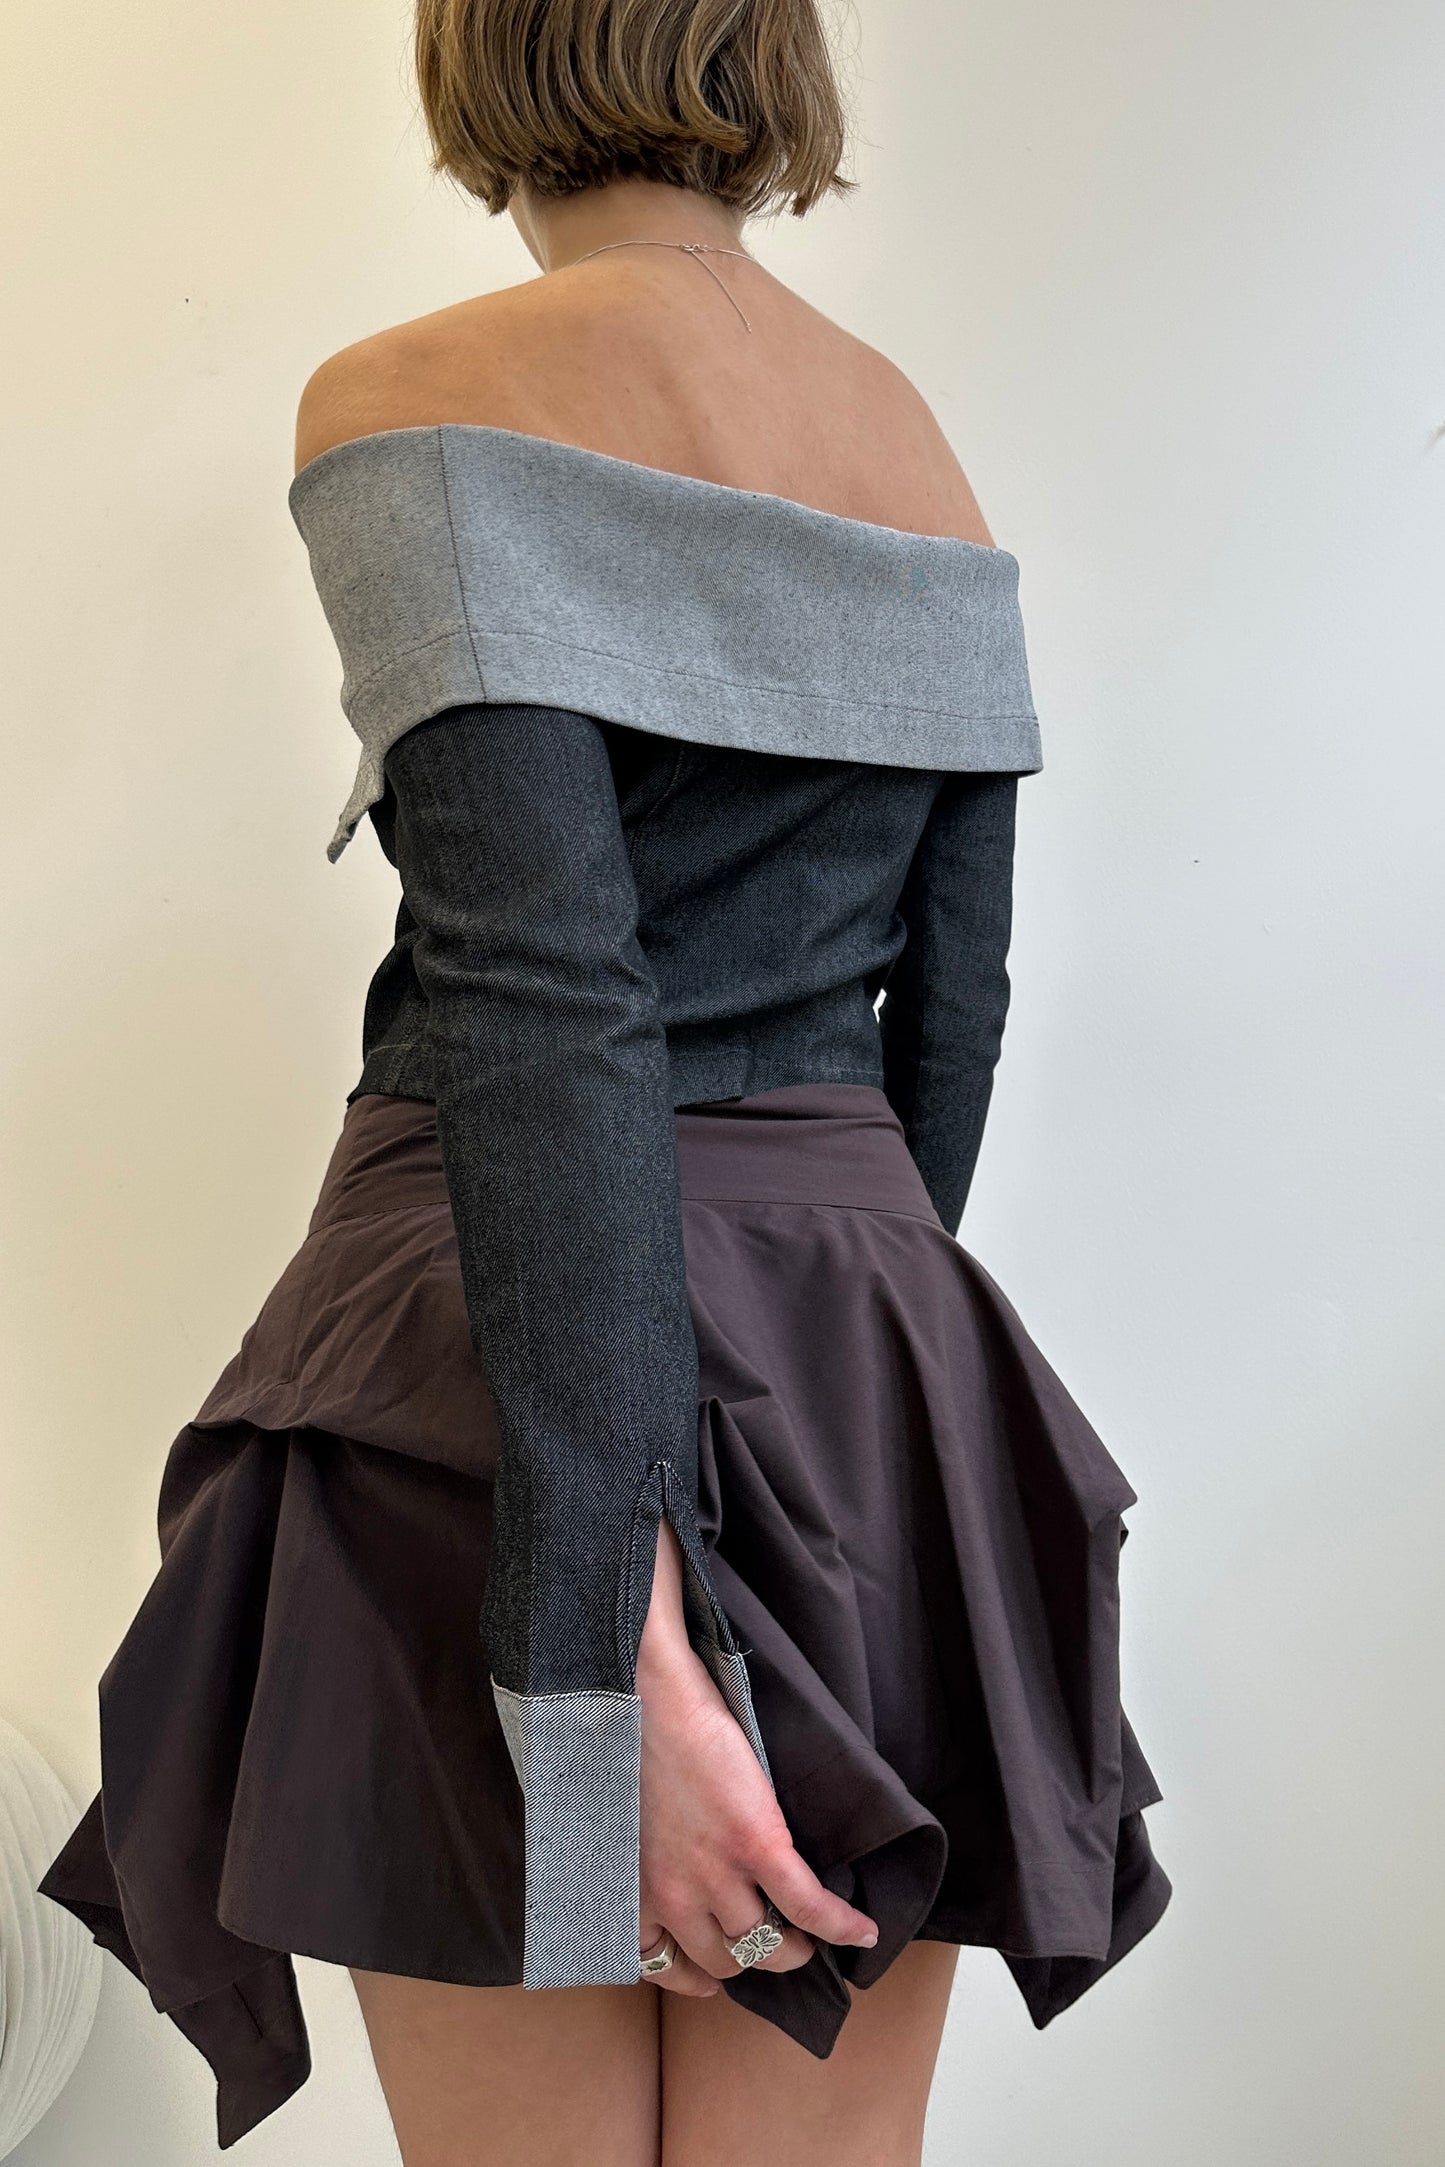 The Lara skirt